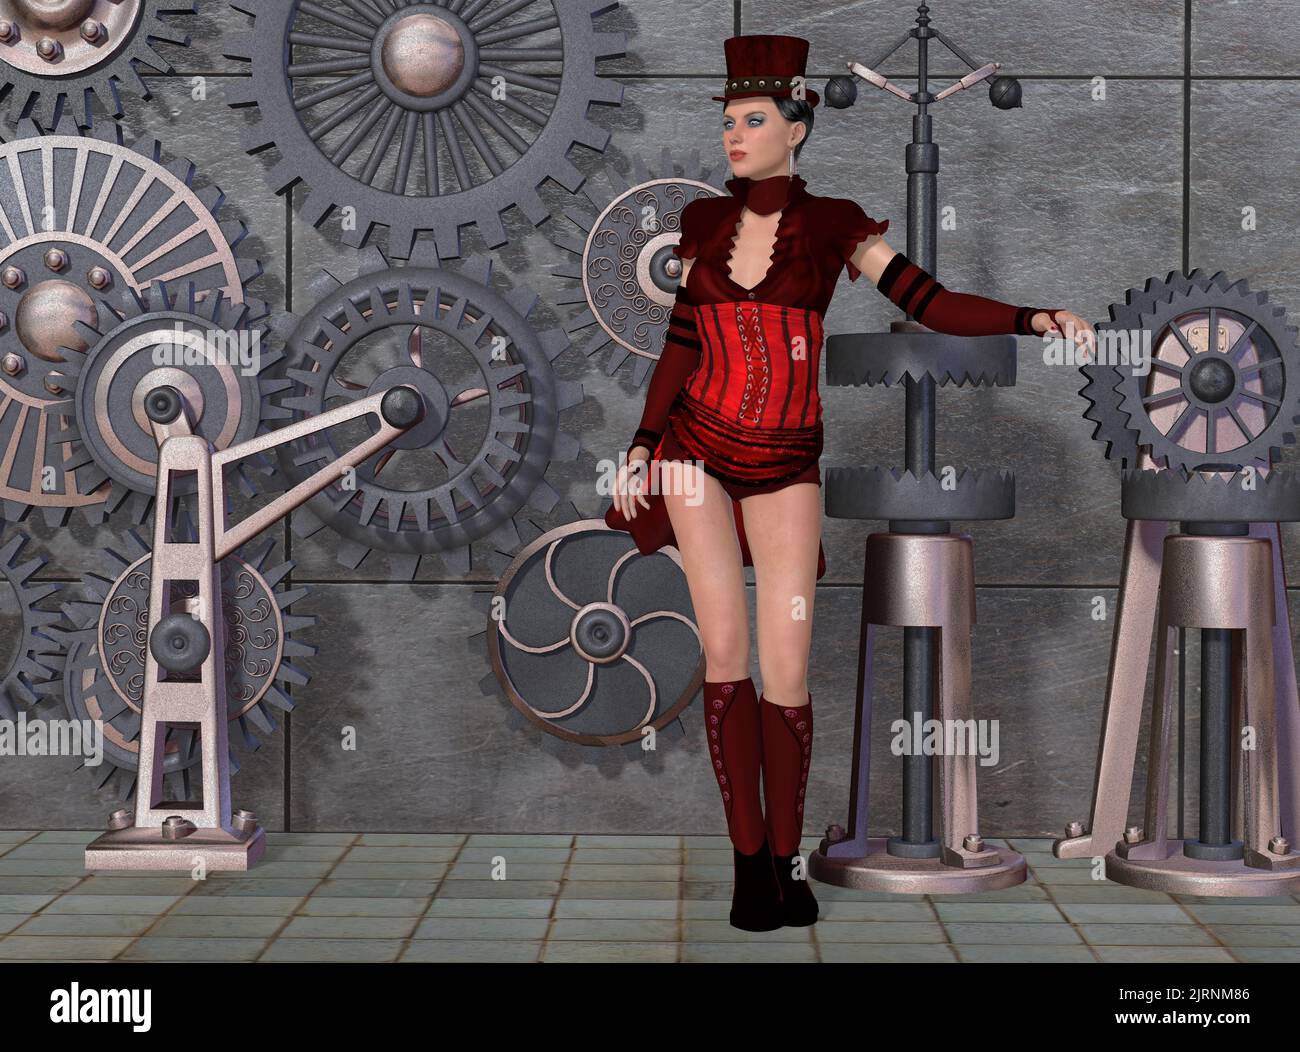 Steampunk Shyael - Une femme habillée de style gothique Steampunk avec un arrière-plan d'engins industriels. Banque D'Images